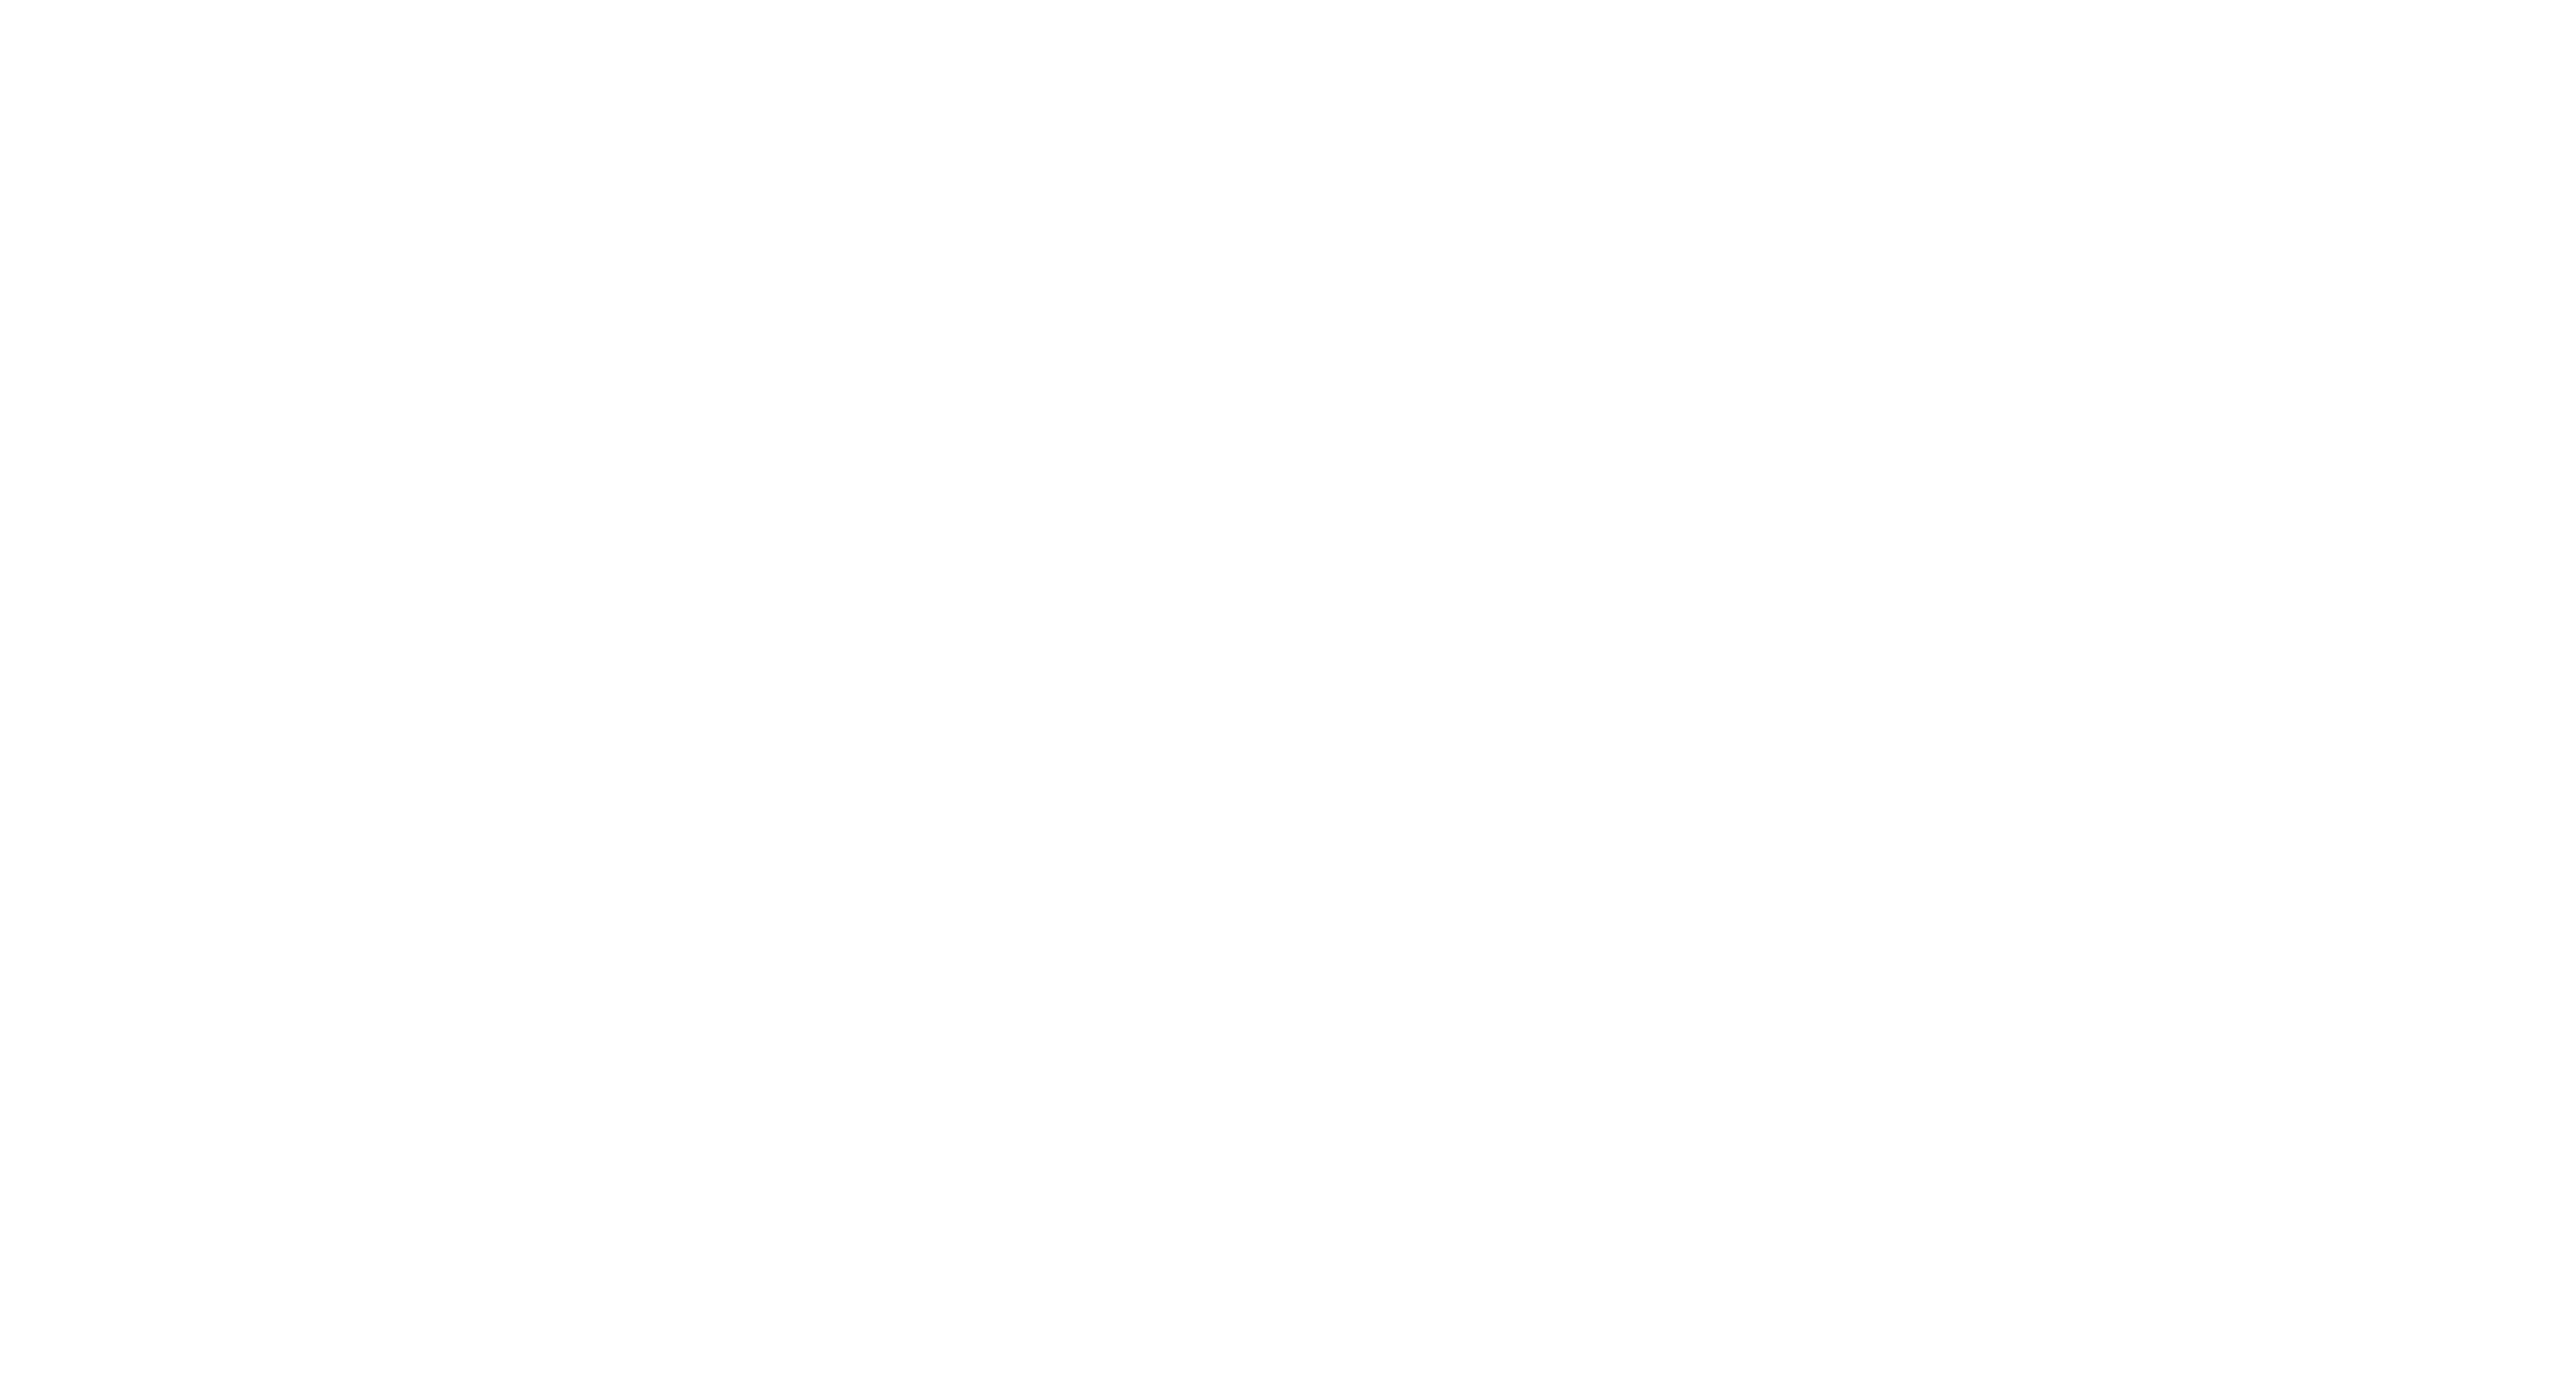 Trace Fm Congo